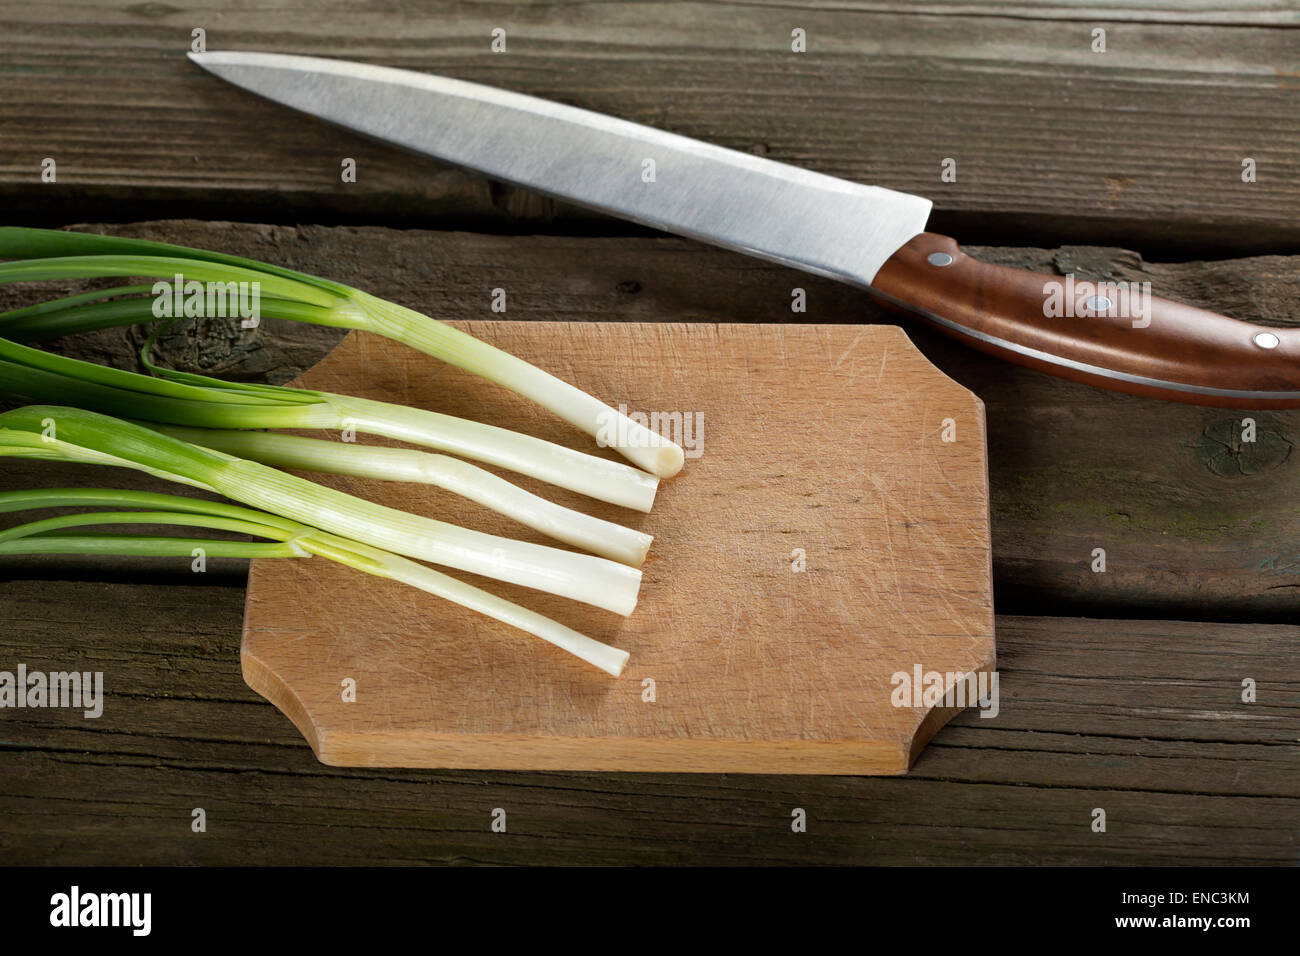 grüne Zwiebeln auf einem Holzbrett und einem Küchenmesser Stockfoto